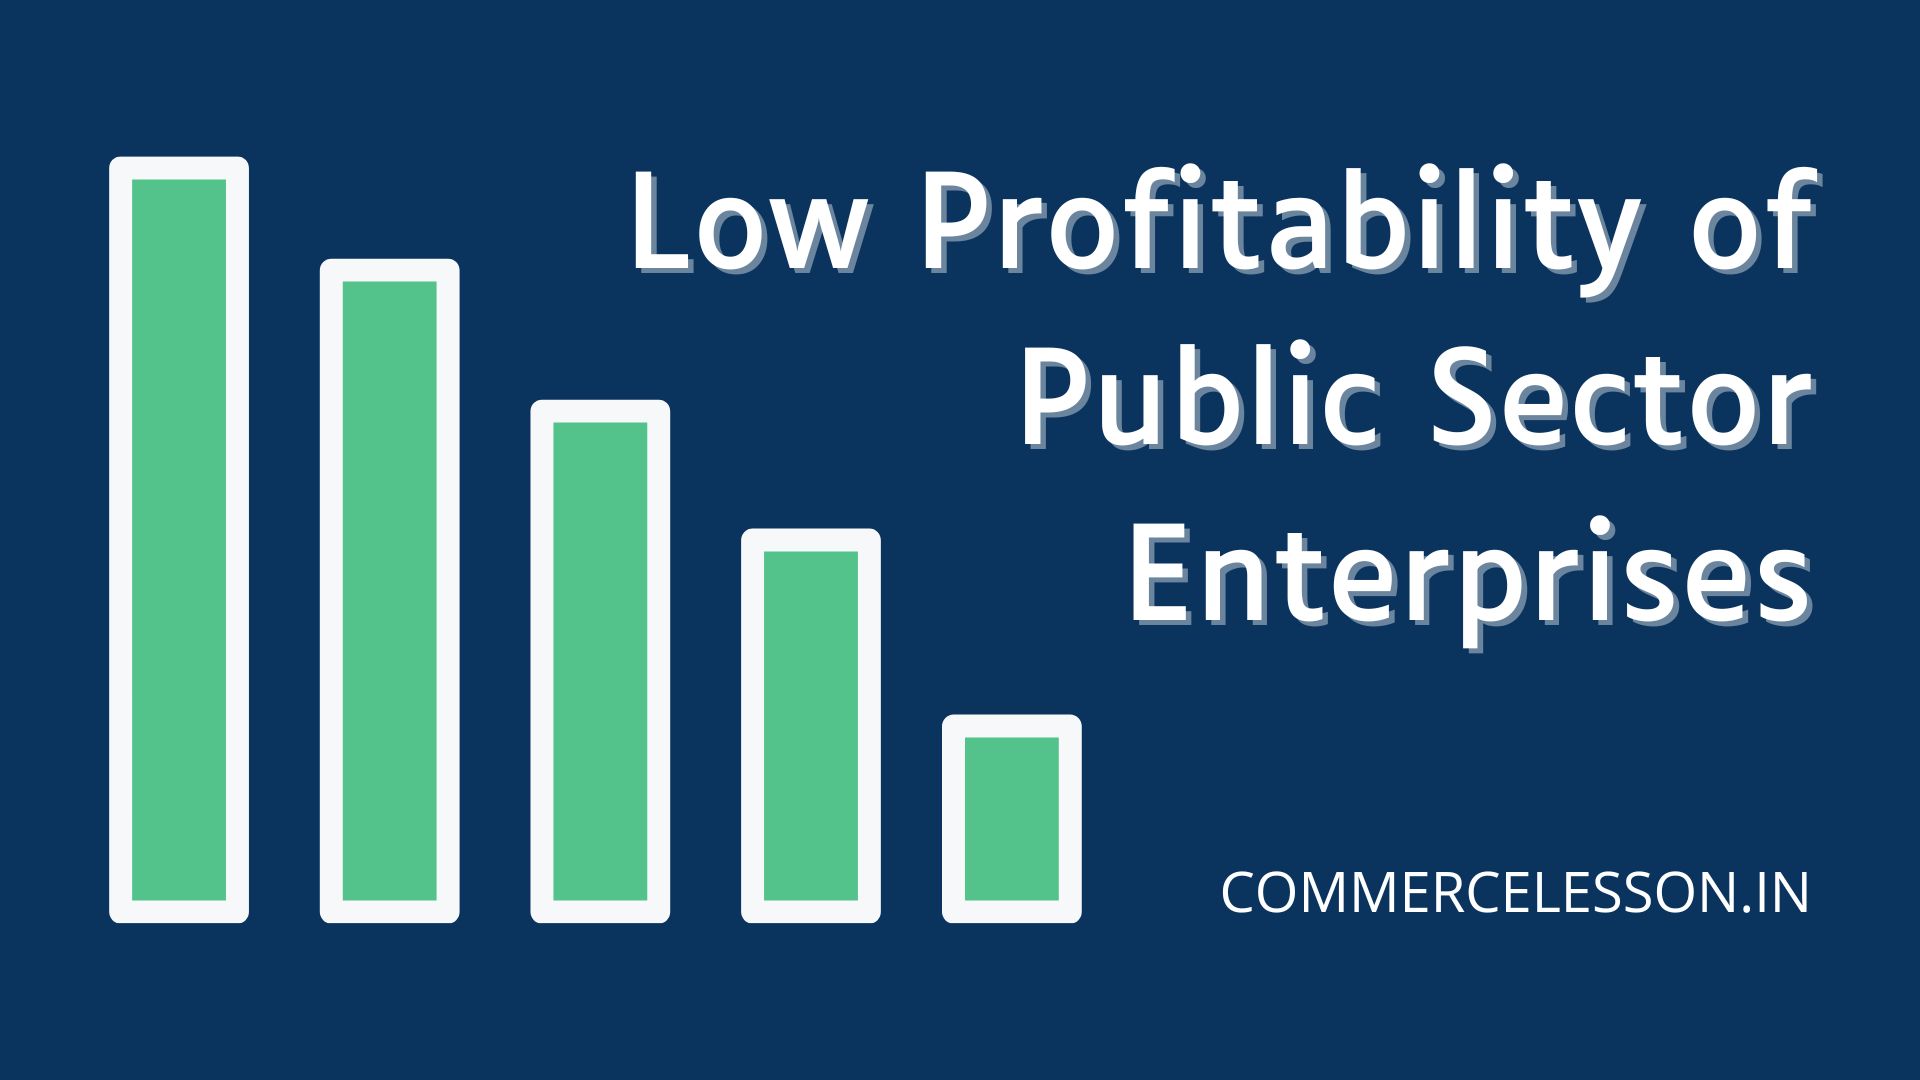 Low profitability of Public Sector Enterprises